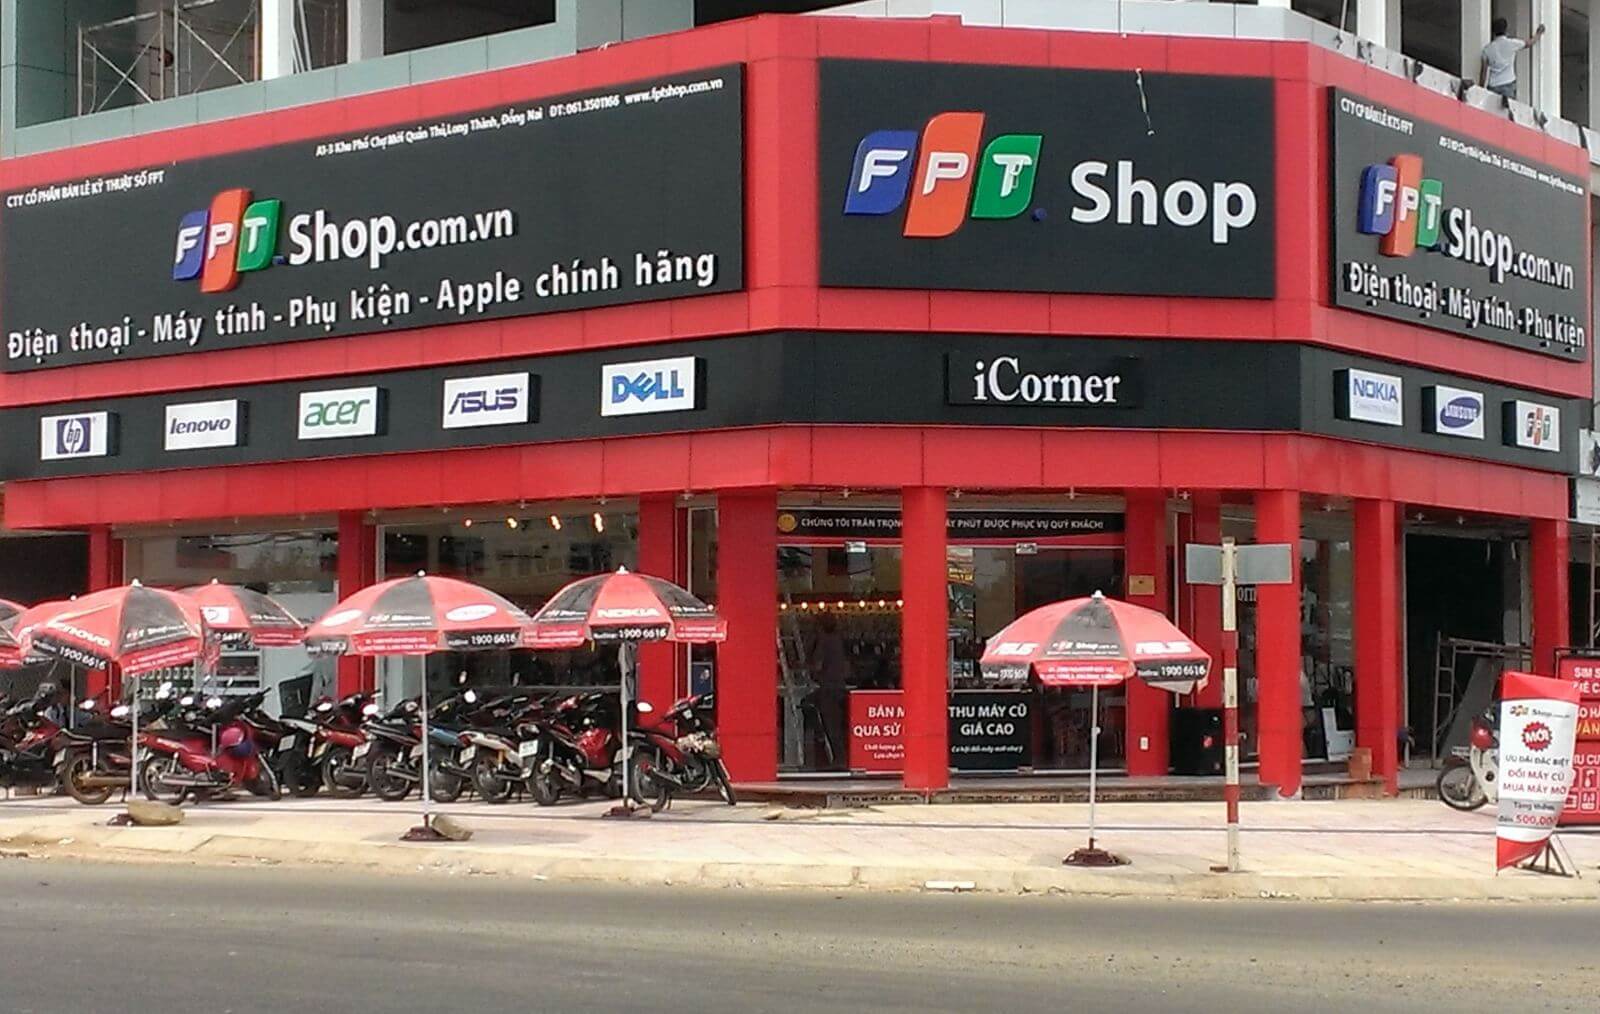 Fpt Shop cung cấp dịch vụ sim số của nhà mạng Viettel